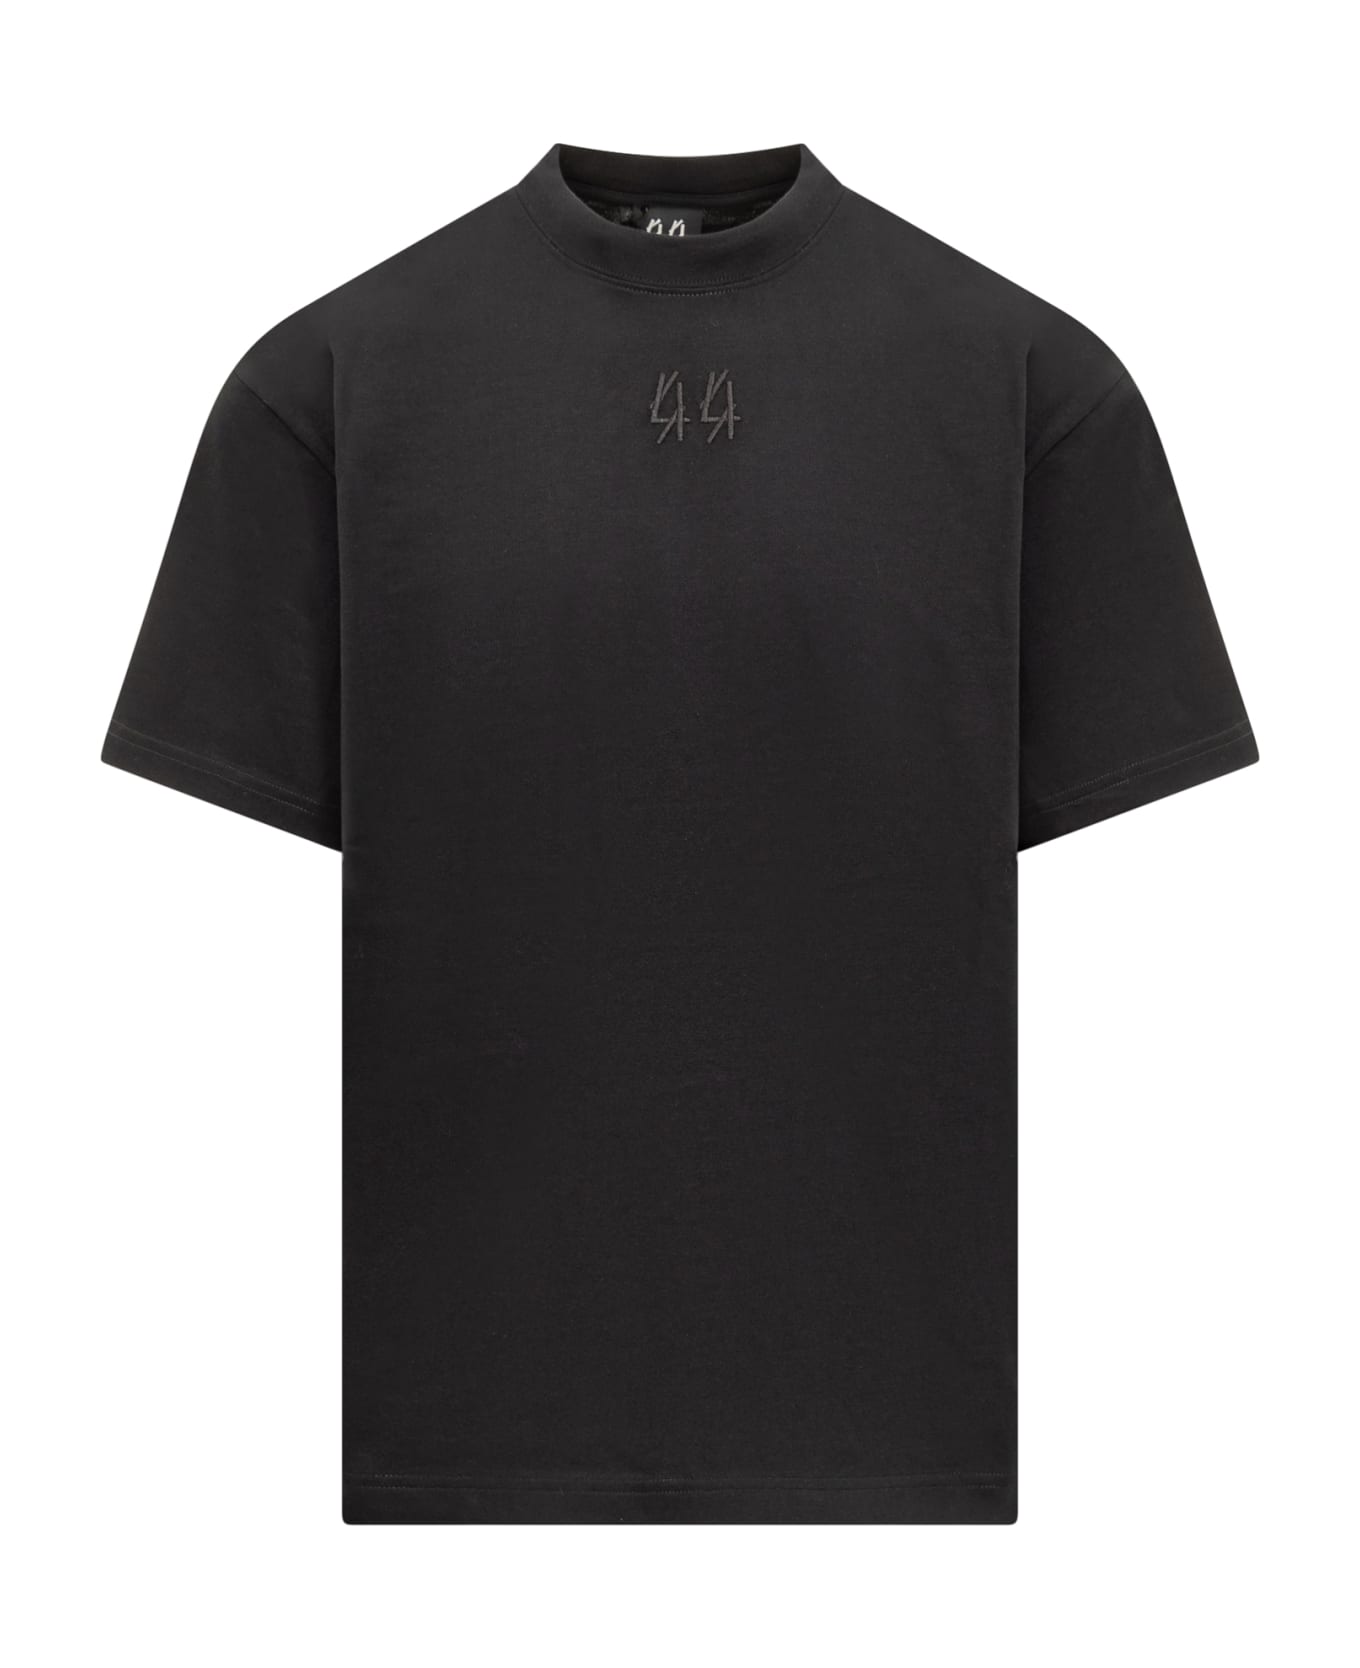 44 Label Group Gaffer T-shirt - BLACK-44 GAFFER PRINT